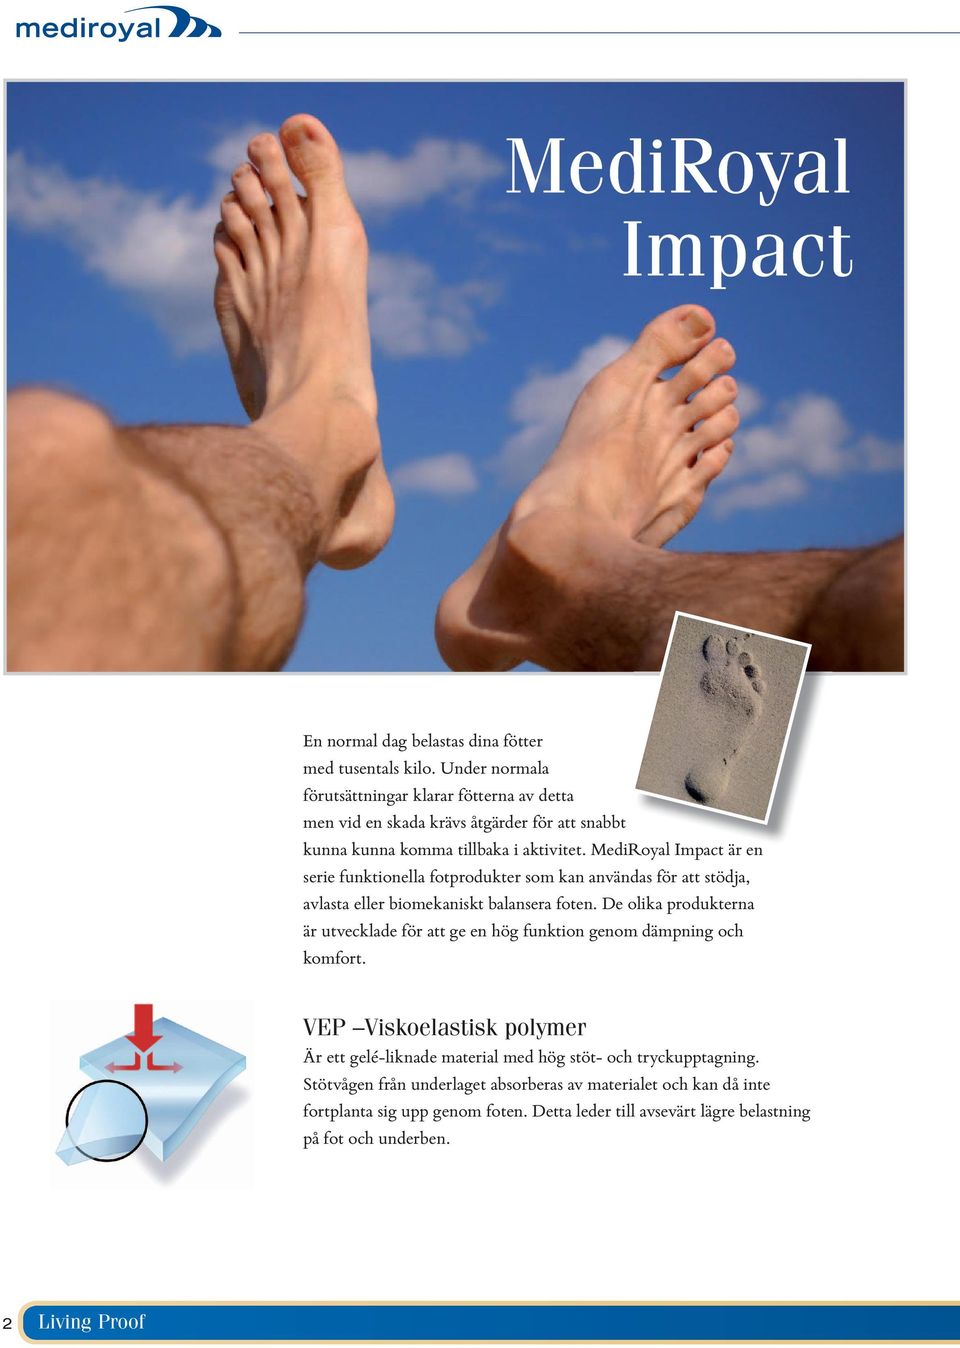 MediRoyal Impact är en serie funktionella fotprodukter som kan användas för att stödja, avlasta eller biomekaniskt balansera foten.